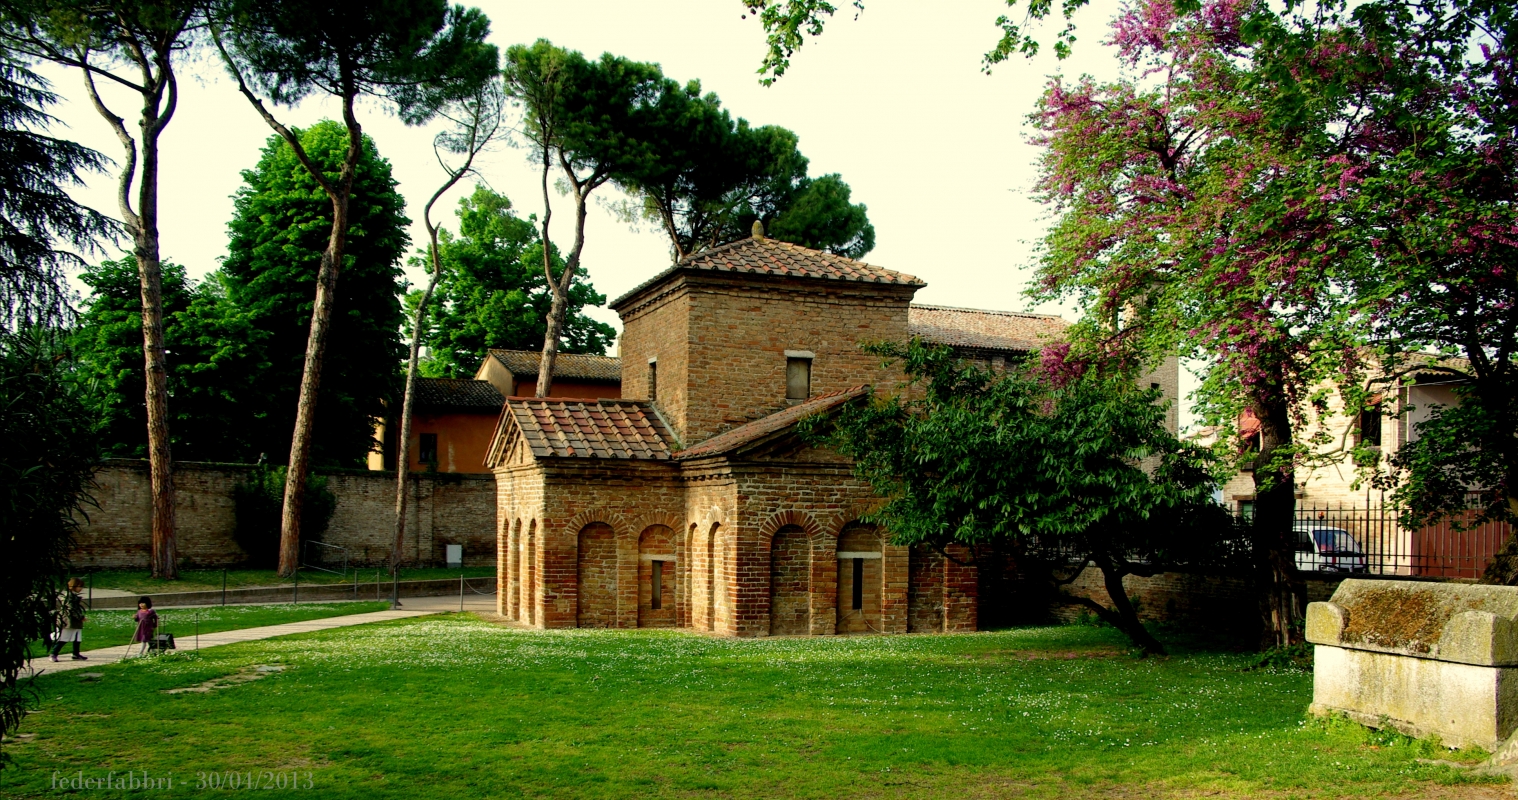 Il Mausoleo di Galla Placidia ai primi sentori della primavera - Federfabbri